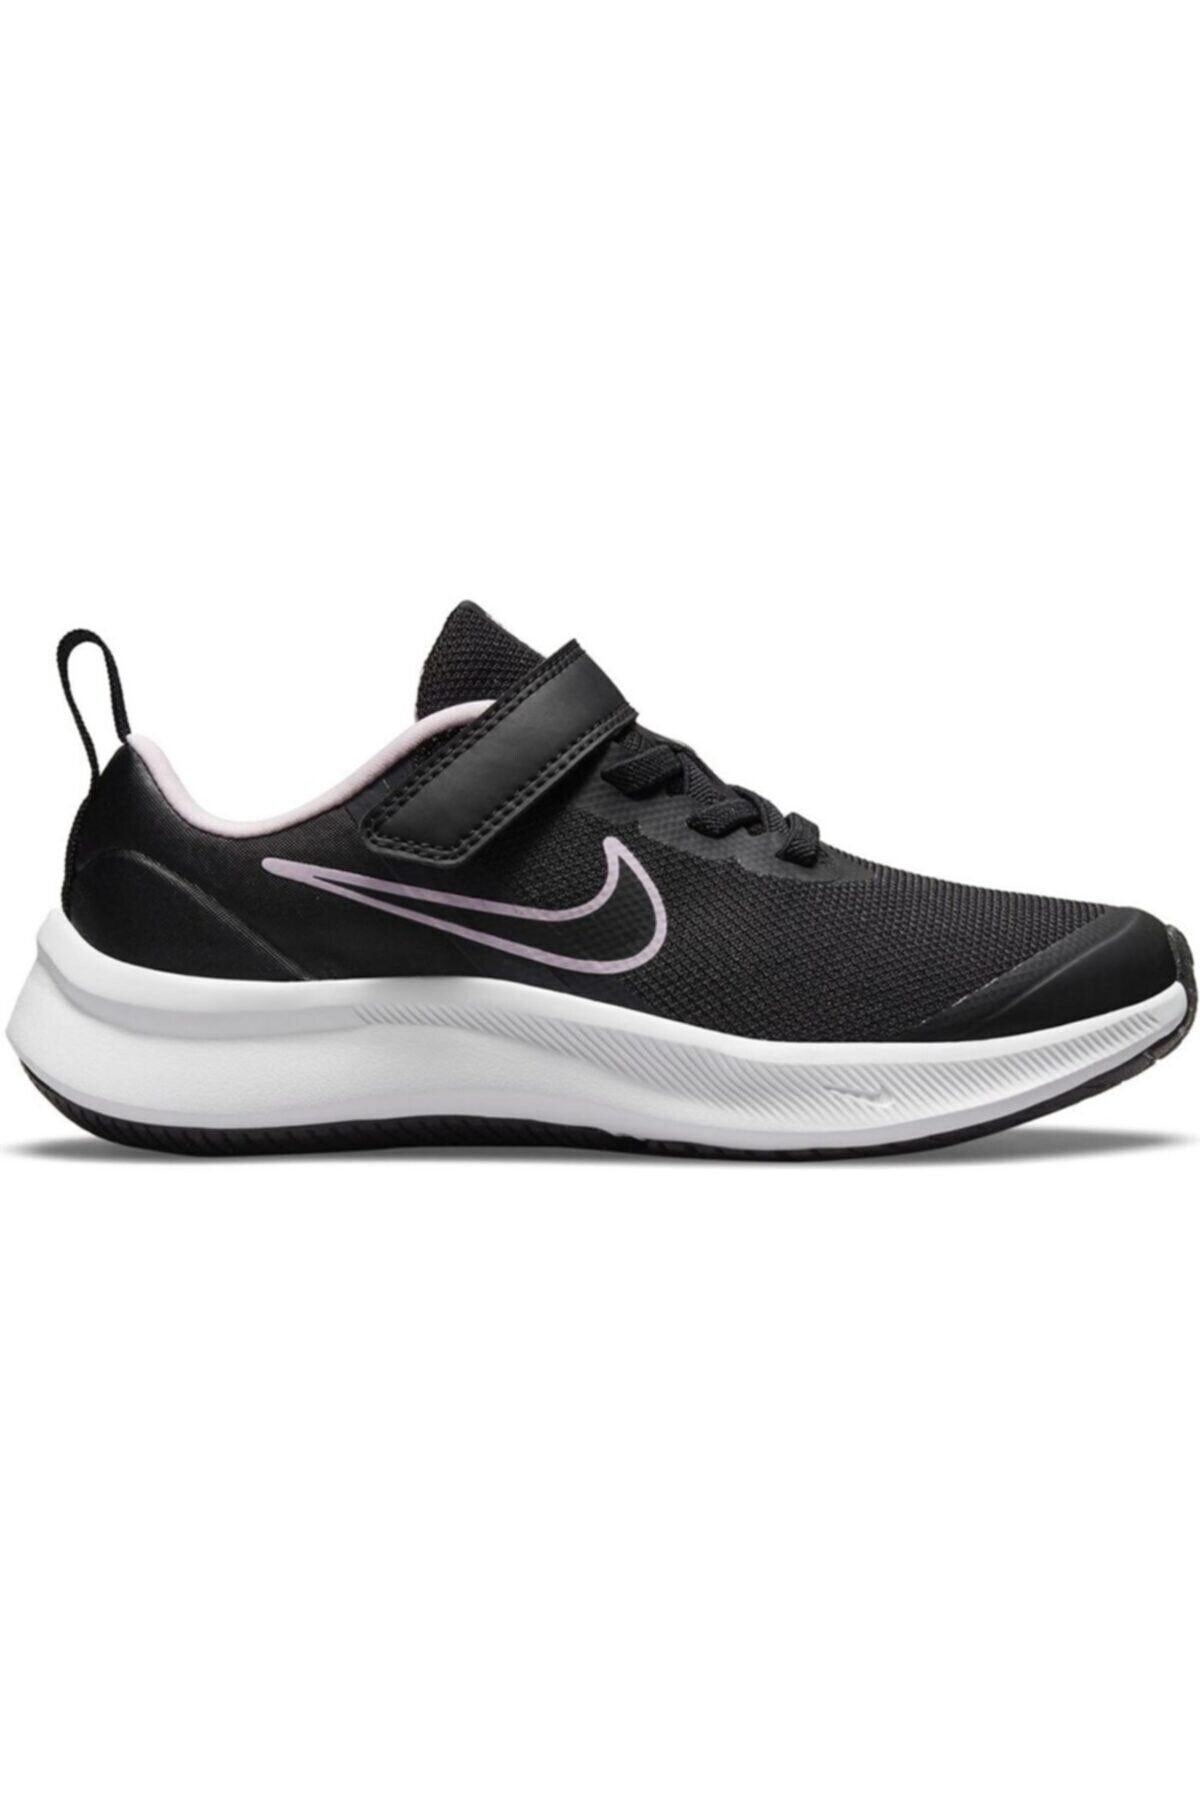 Nike Star Runner 3 (PSV) Çocuk Yürüyüş Koşu Ayakkabı Da2777-002-siyah-lila